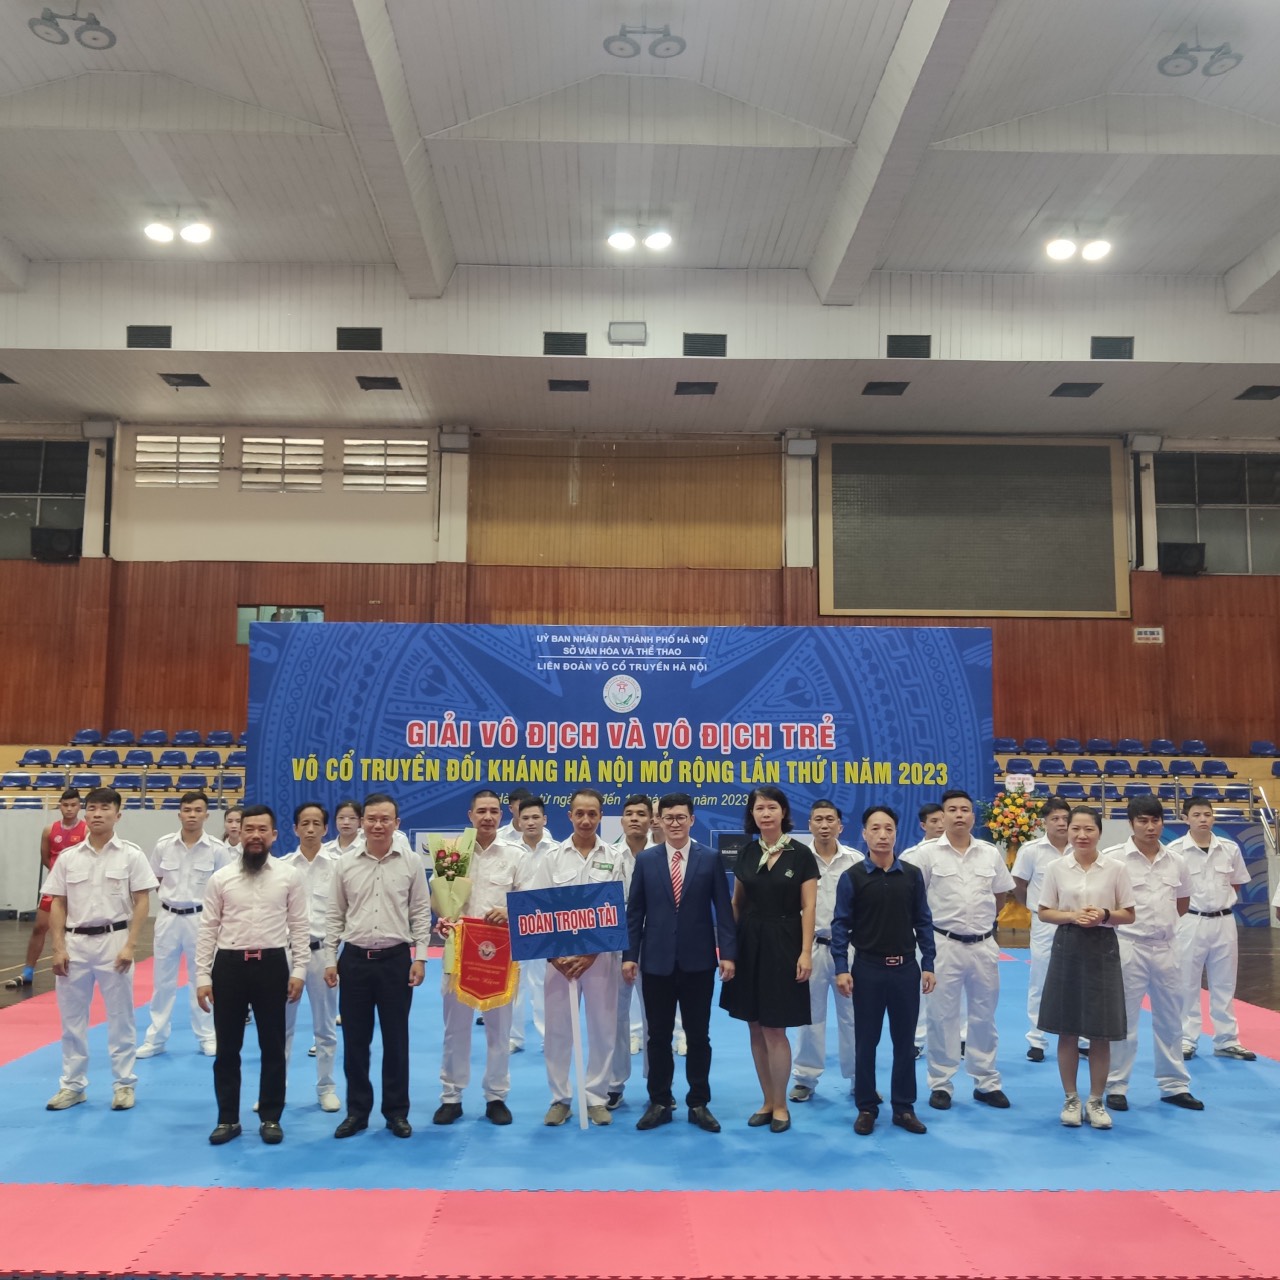 Đoàn trọng tài cùng Lãnh đạo Liên đoàn Giải vô địch trẻ Võ Cổ truyền Hà Nội